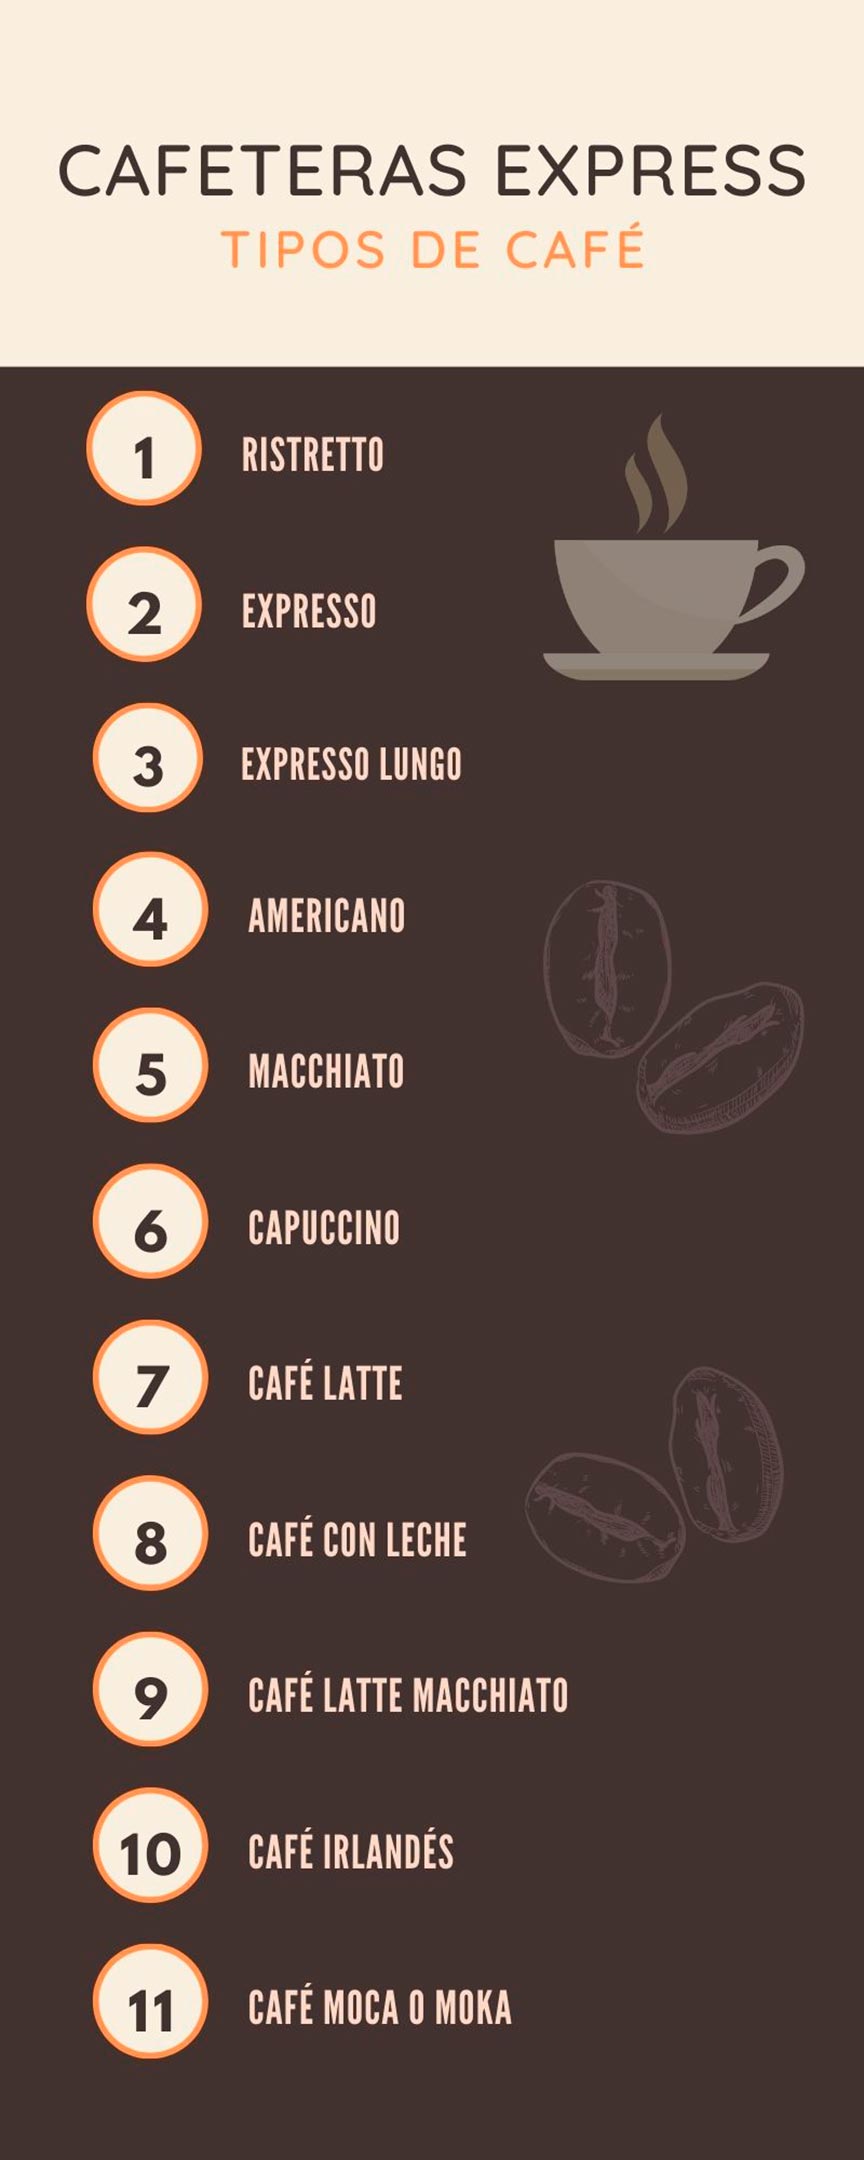 Infografía mostrando los tipos de café que se pueden elaborar con cafeteras express